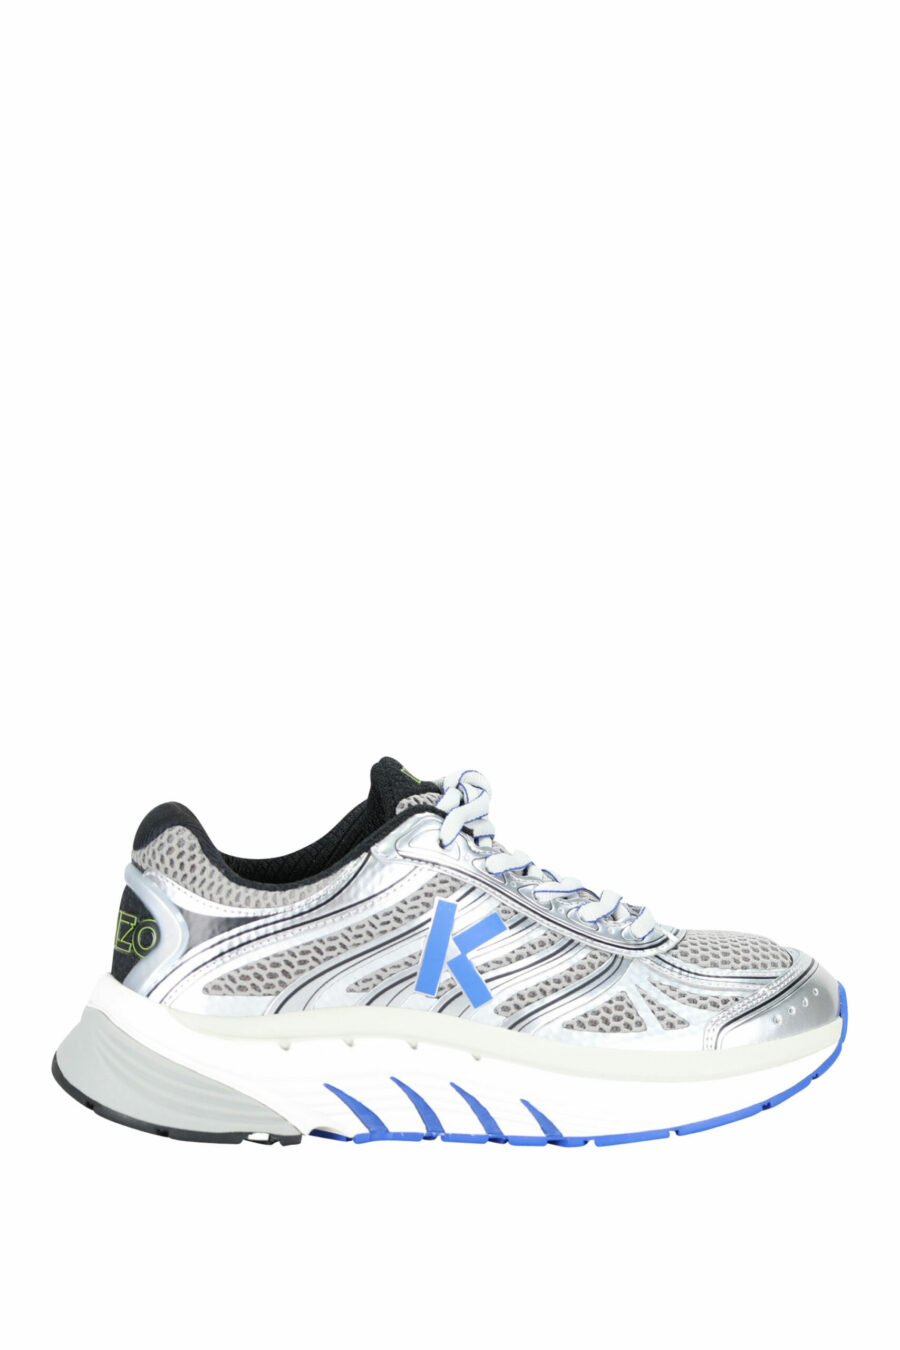 Zapatillas grises con azul "kenzo tech runner" - 3612230549418 scaled